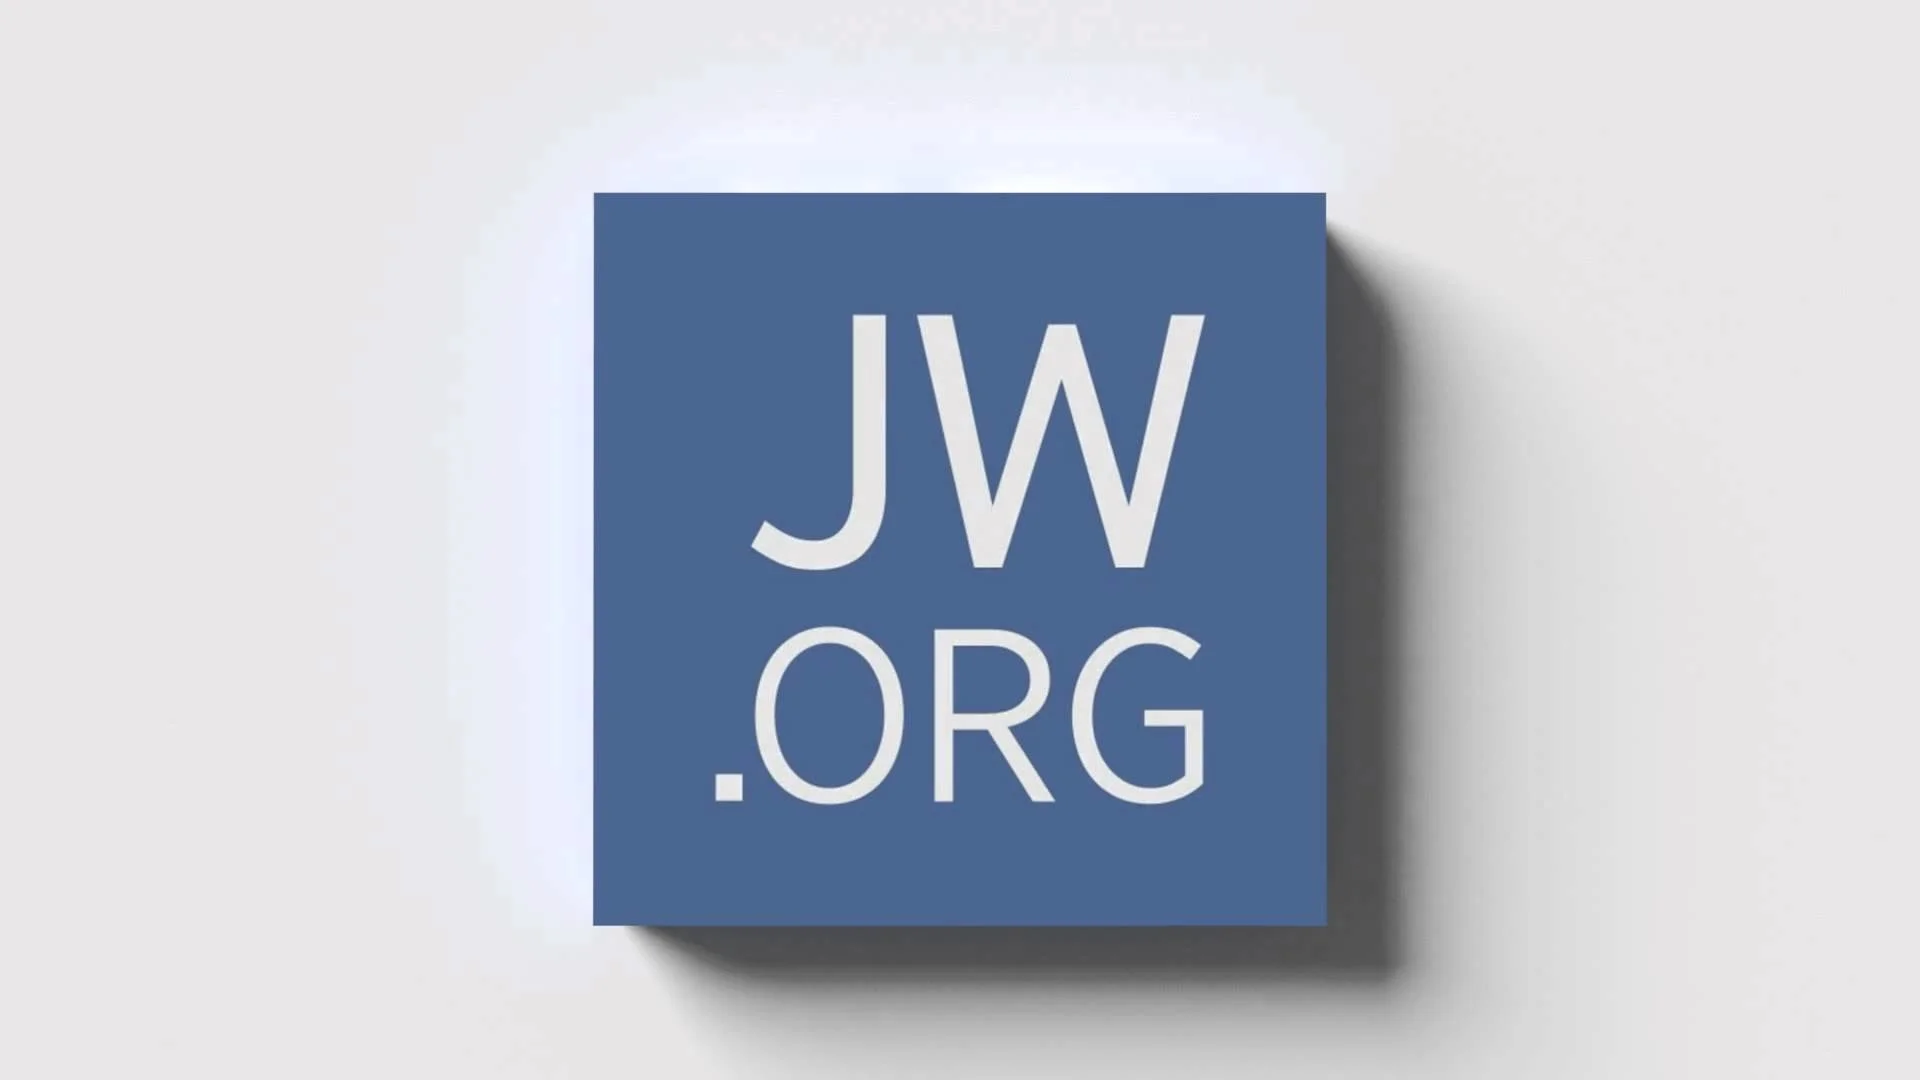 Https jw org. JW org. JW логотип. JW.org картинки. Www JW org ru.